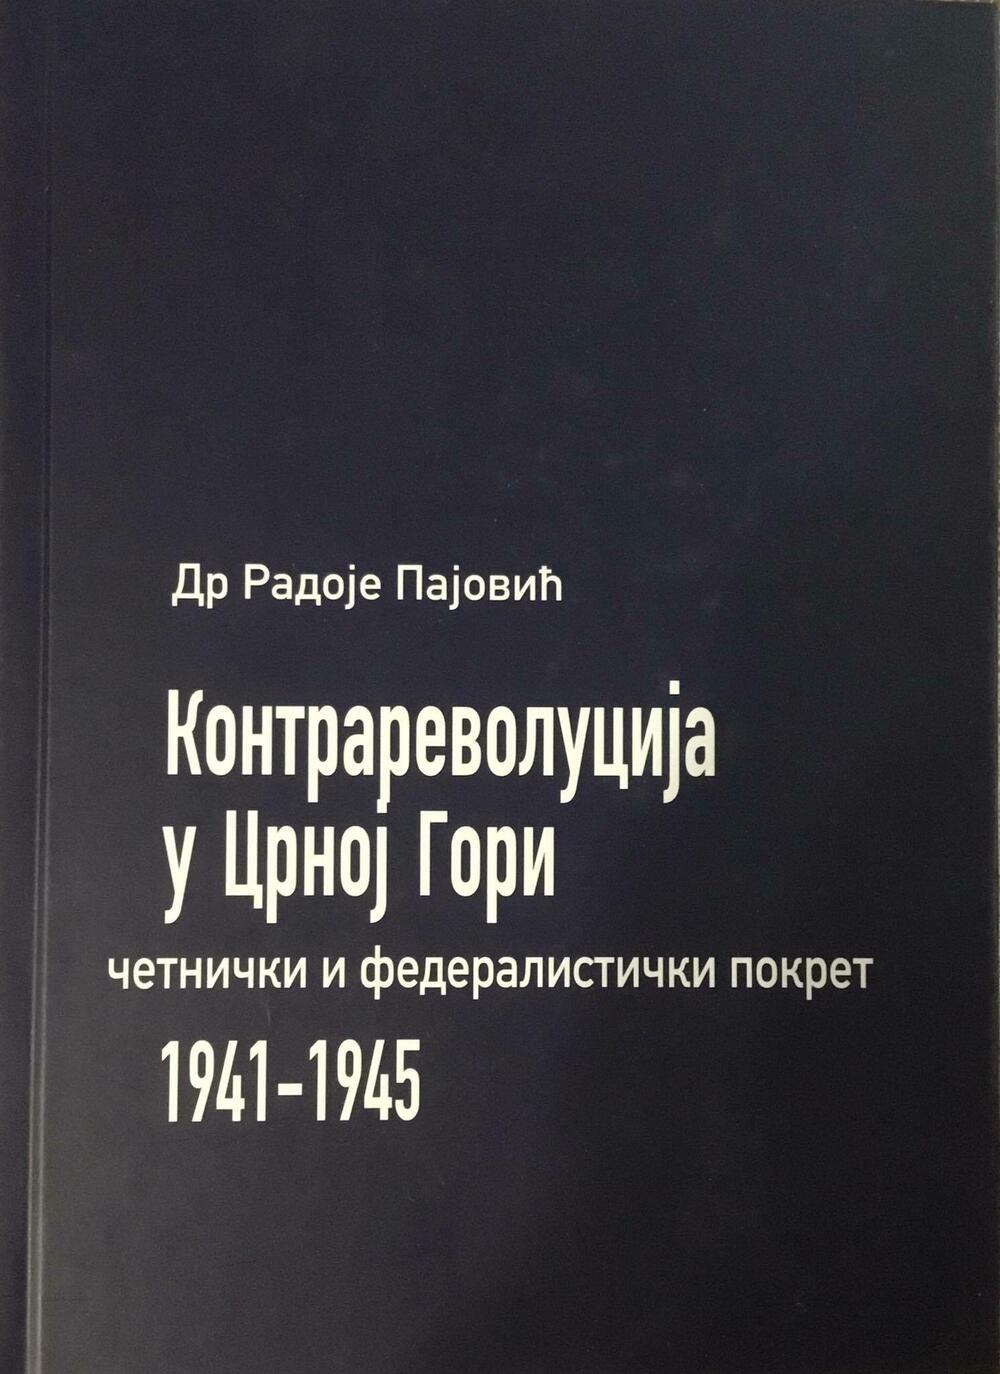 “Kontrarevolucija u Crnoj Gori 1941 - 1945”